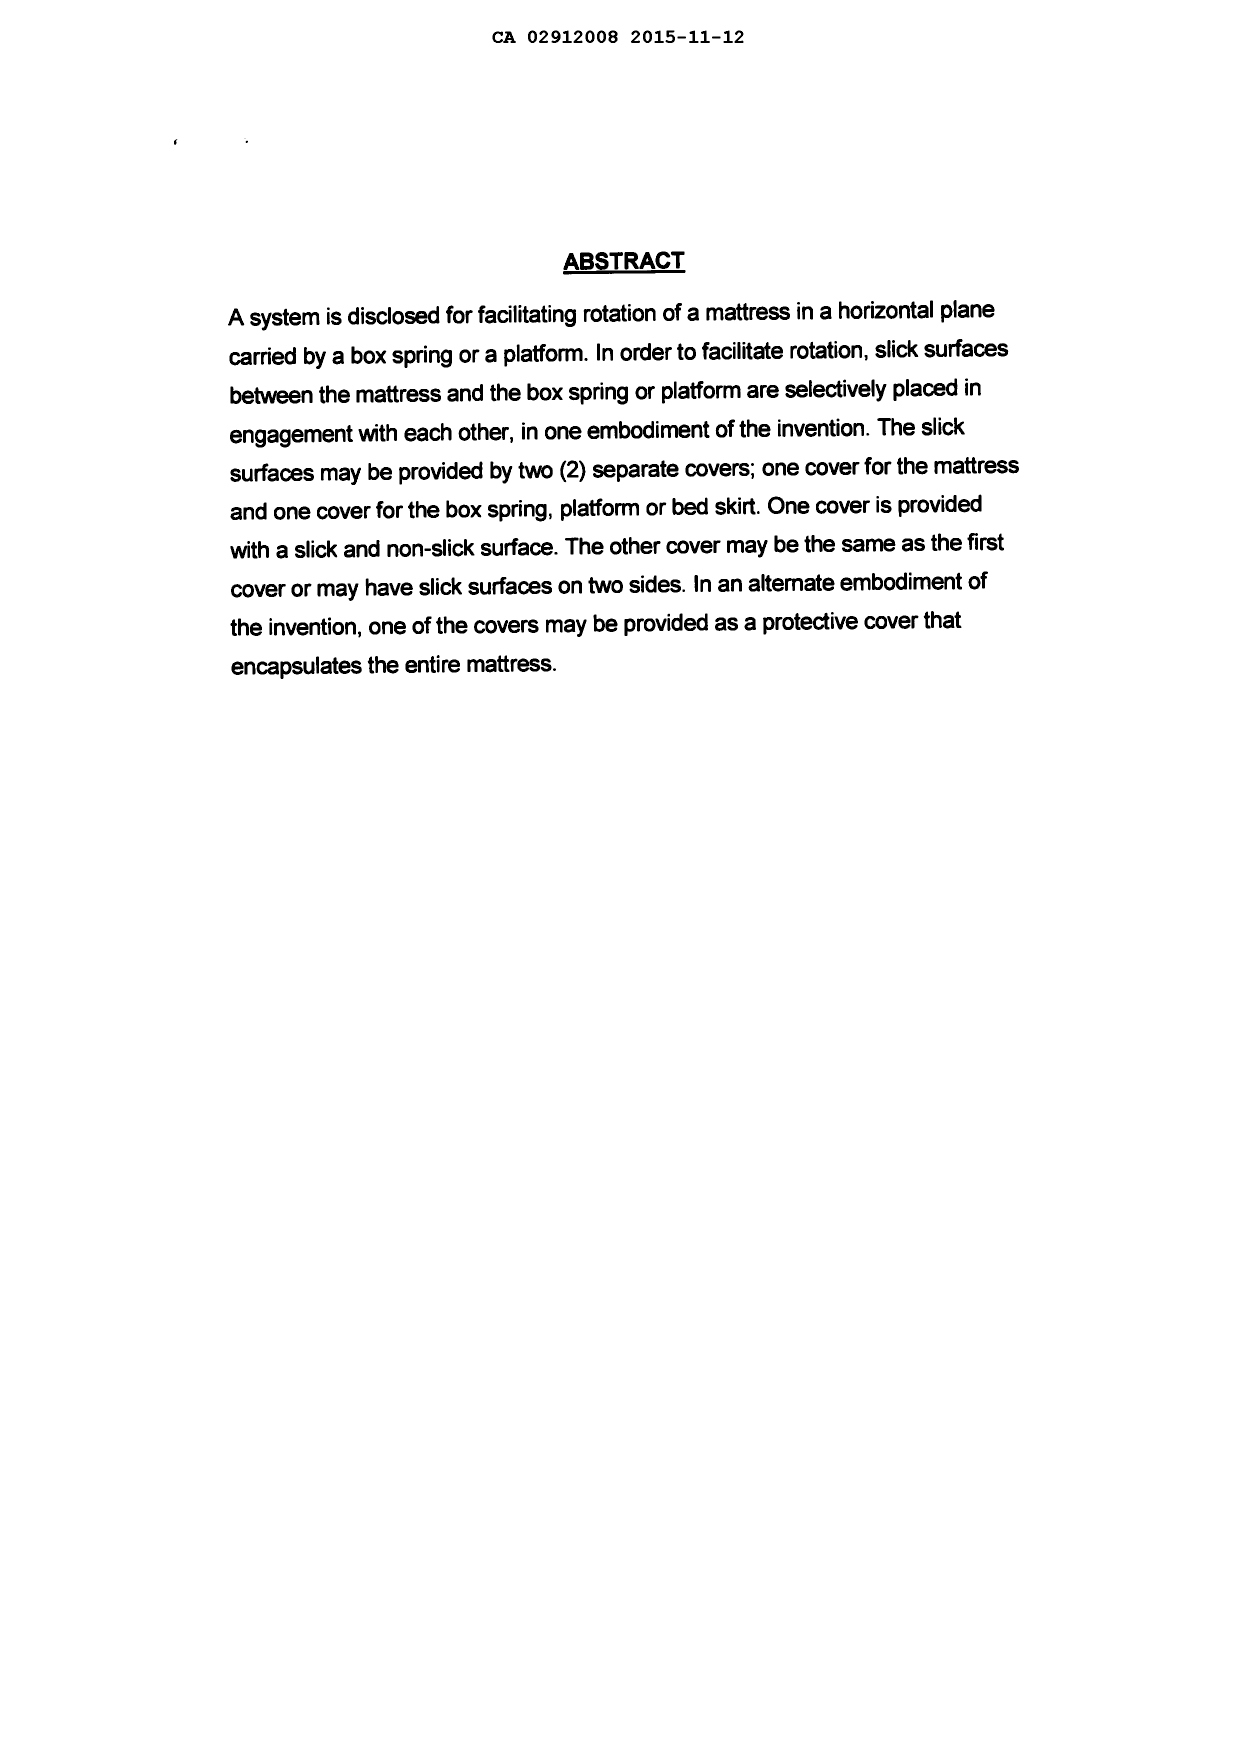 Document de brevet canadien 2912008. Abrégé 20151112. Image 1 de 1